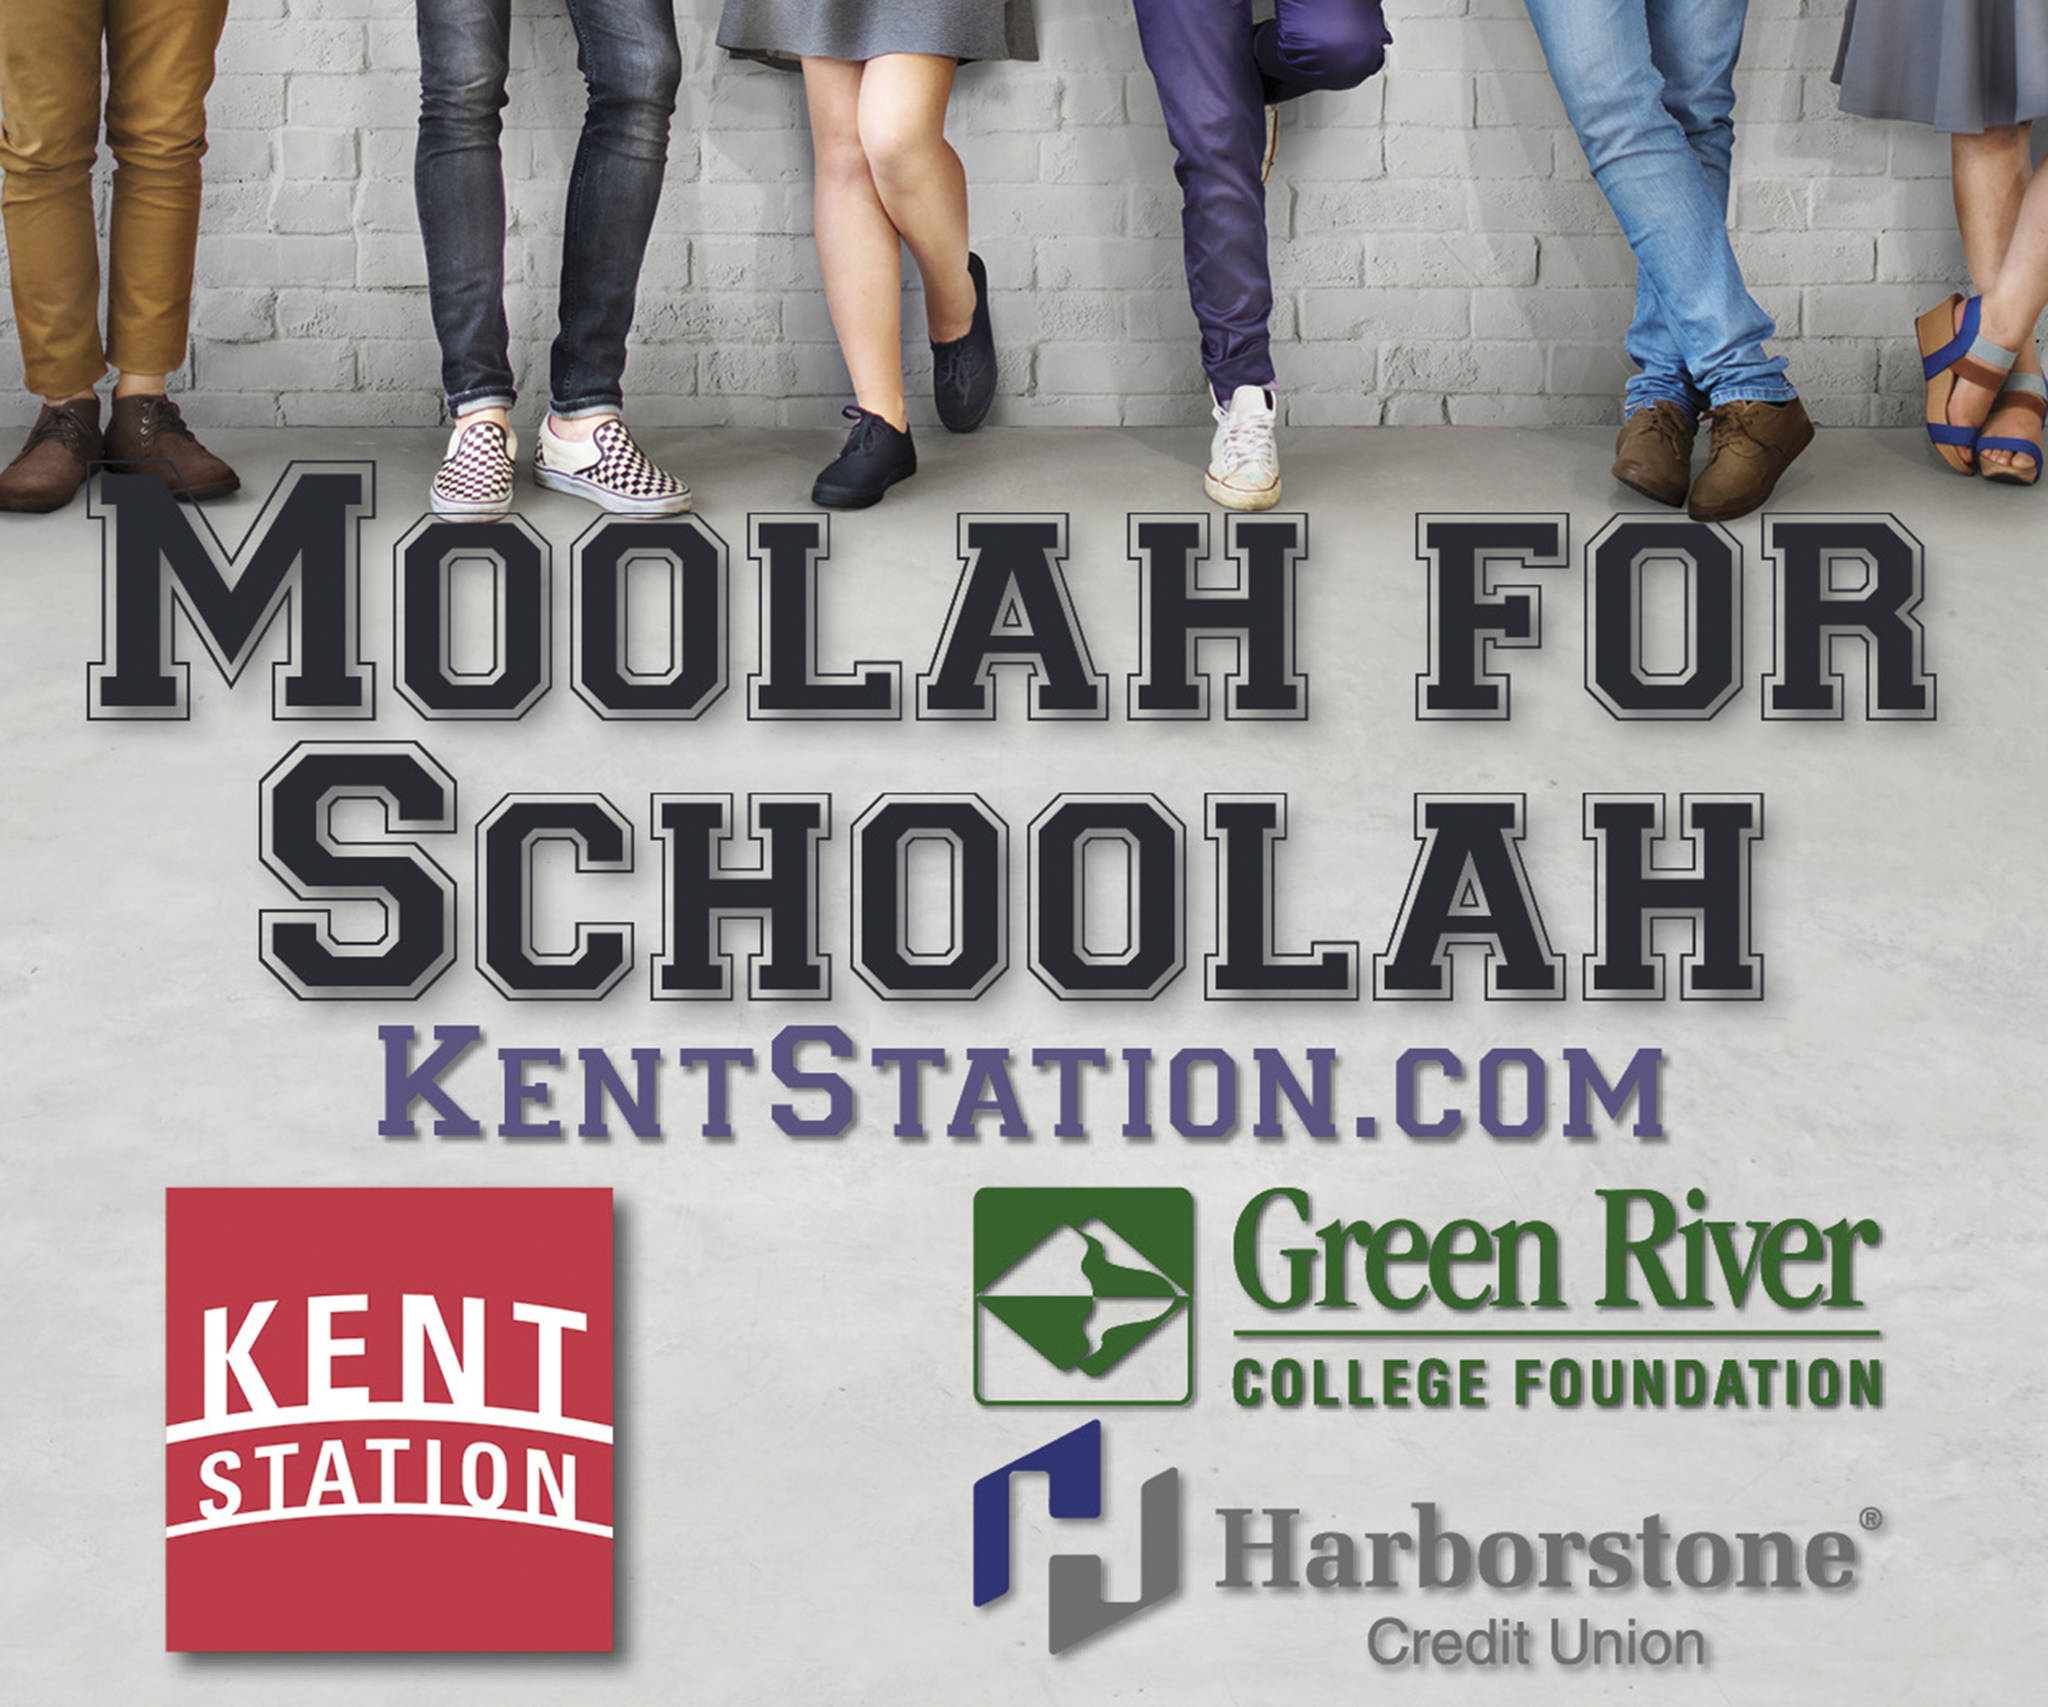 Kent Station presents Moolah for Schoolah scholarship fundraiser